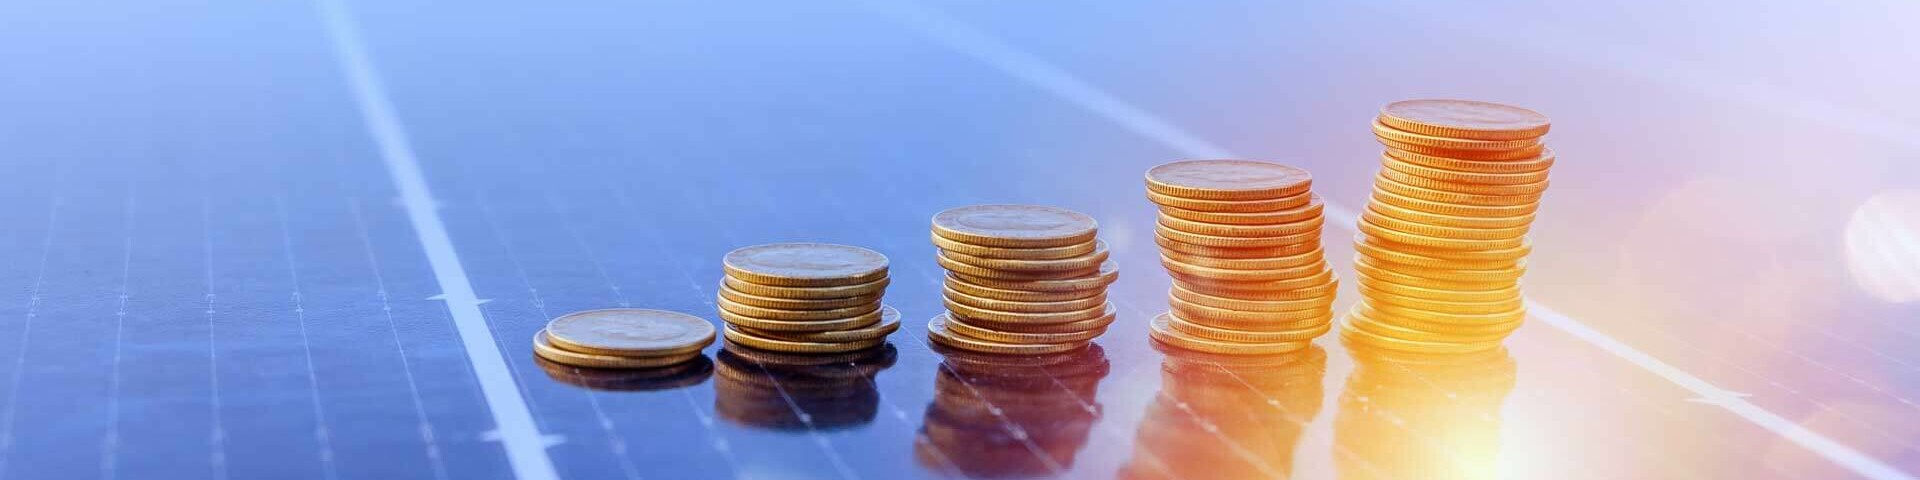 Geldmünzen auf einer Solaranlage